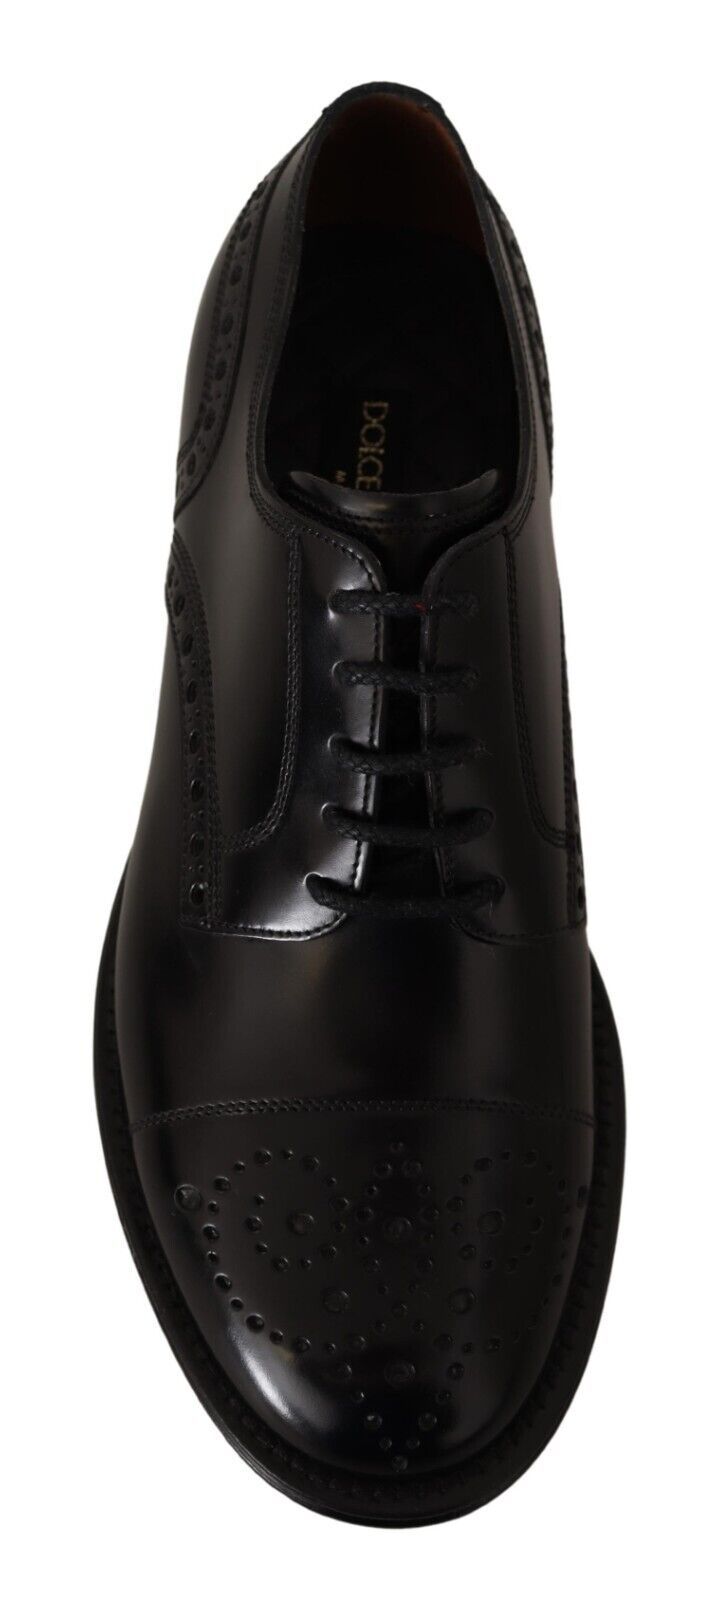 Dolce & Gabbana Elegant Wingtip Oxford Formal Shoes